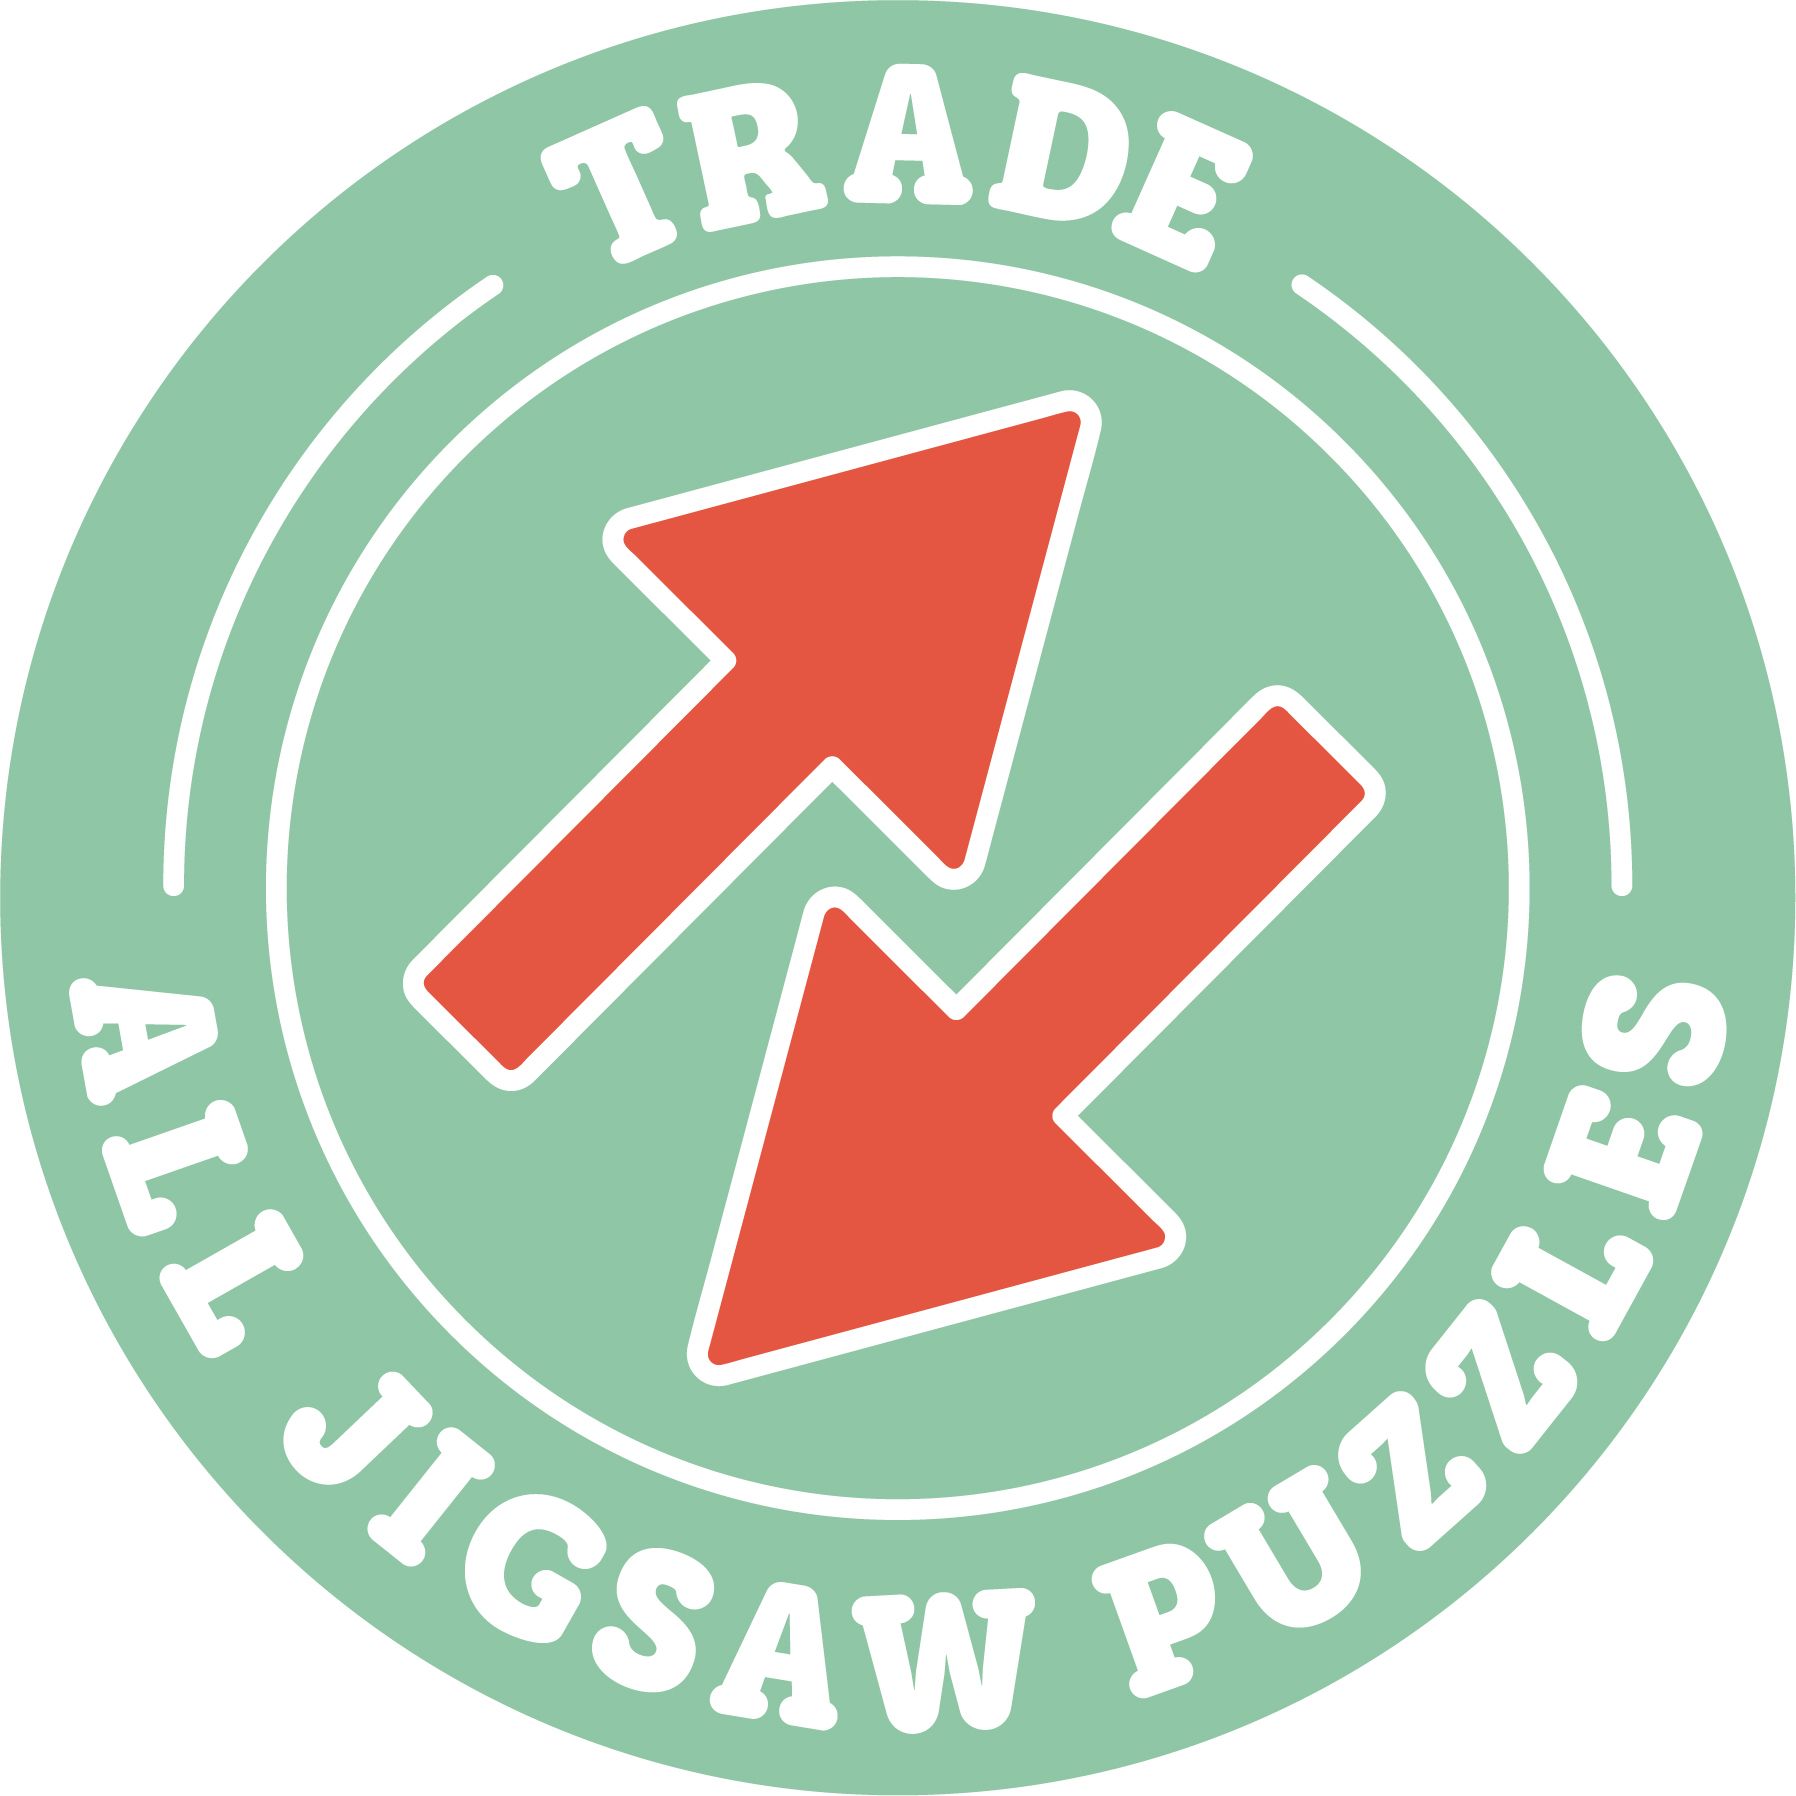 All Jigsaw Puzzles Ltd